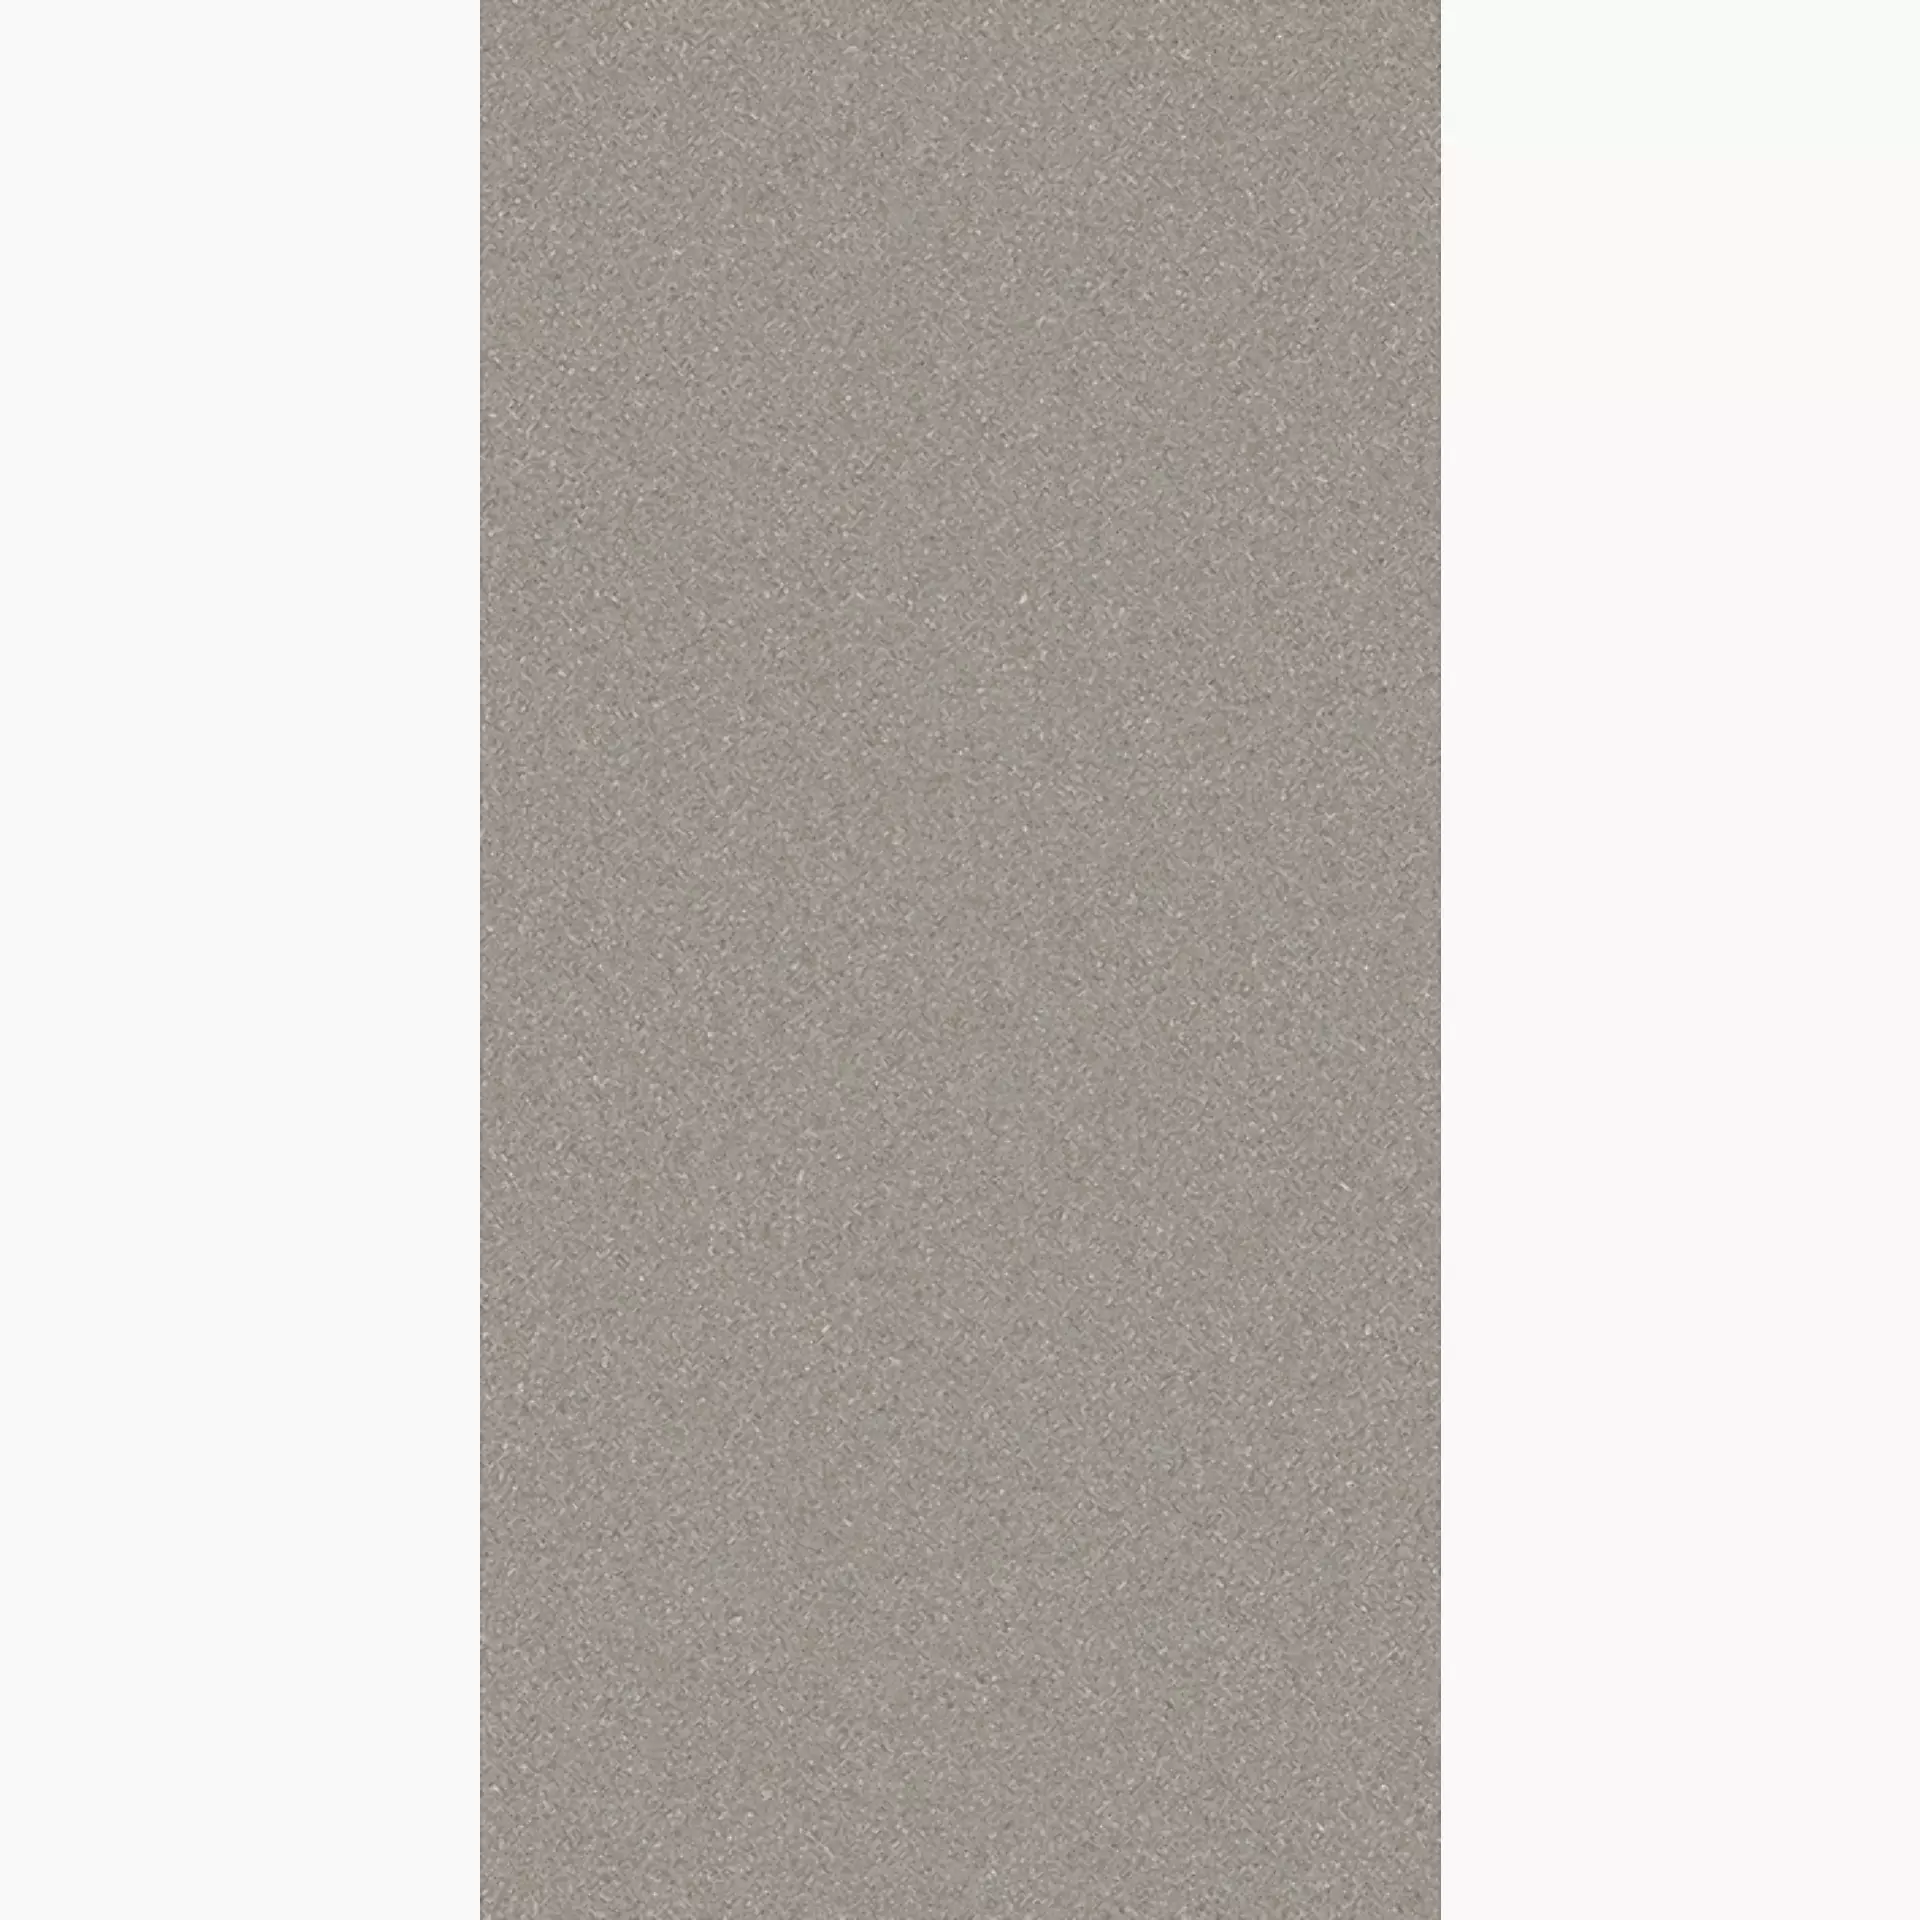 Wandfliese,Bodenfliese Villeroy & Boch Pure Line 2.0 Cement Grey Matt Cement Grey 2754-UL61 matt 30x60cm rektifiziert 12mm